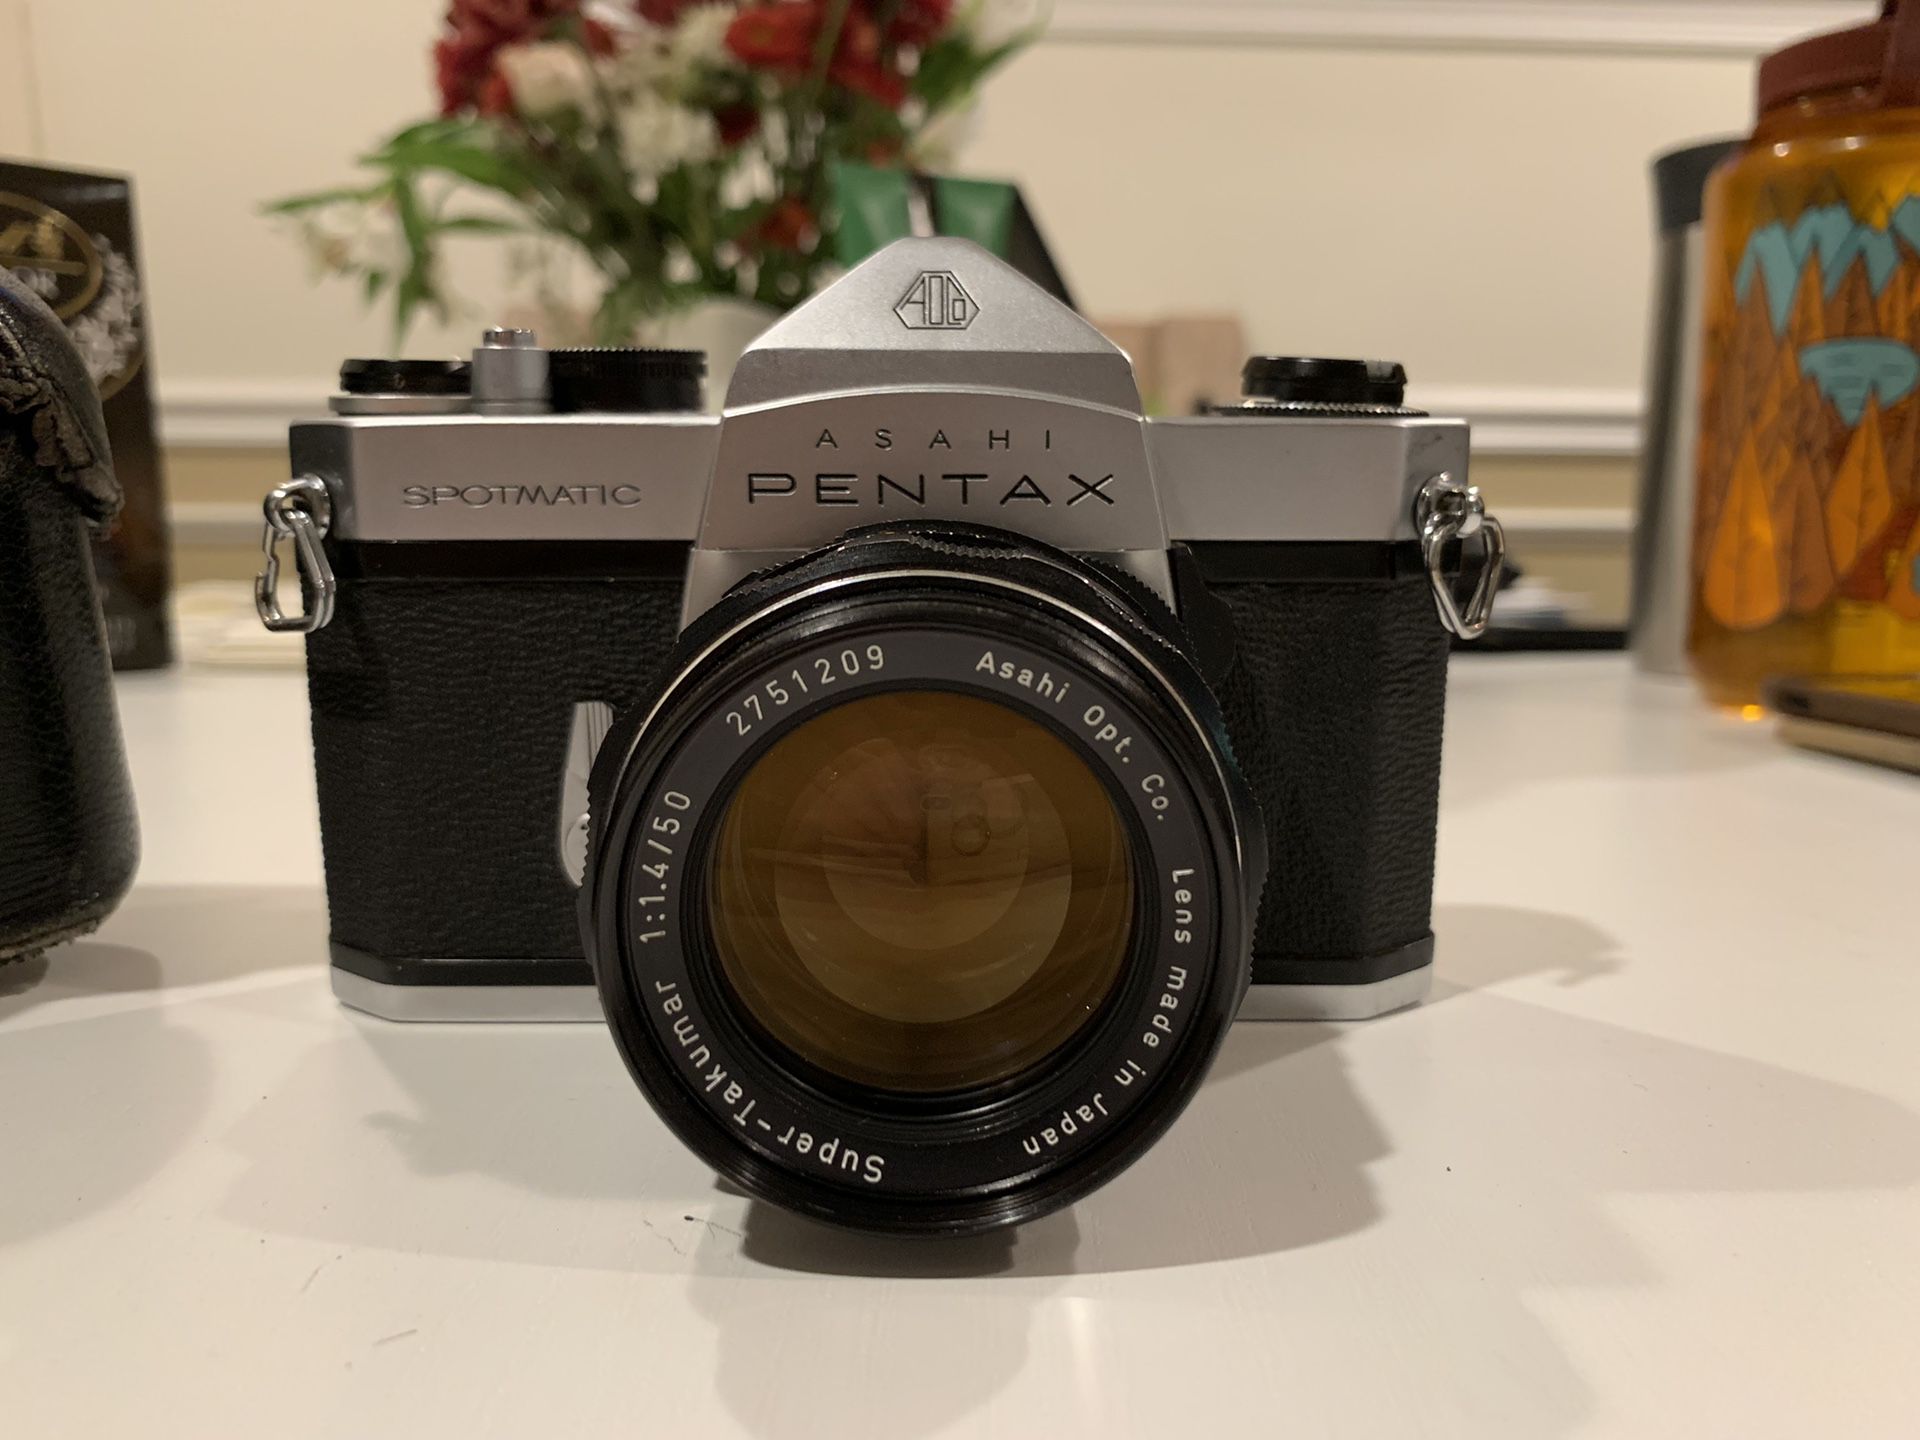 Asahi Pentax Spotmatic - Film camera